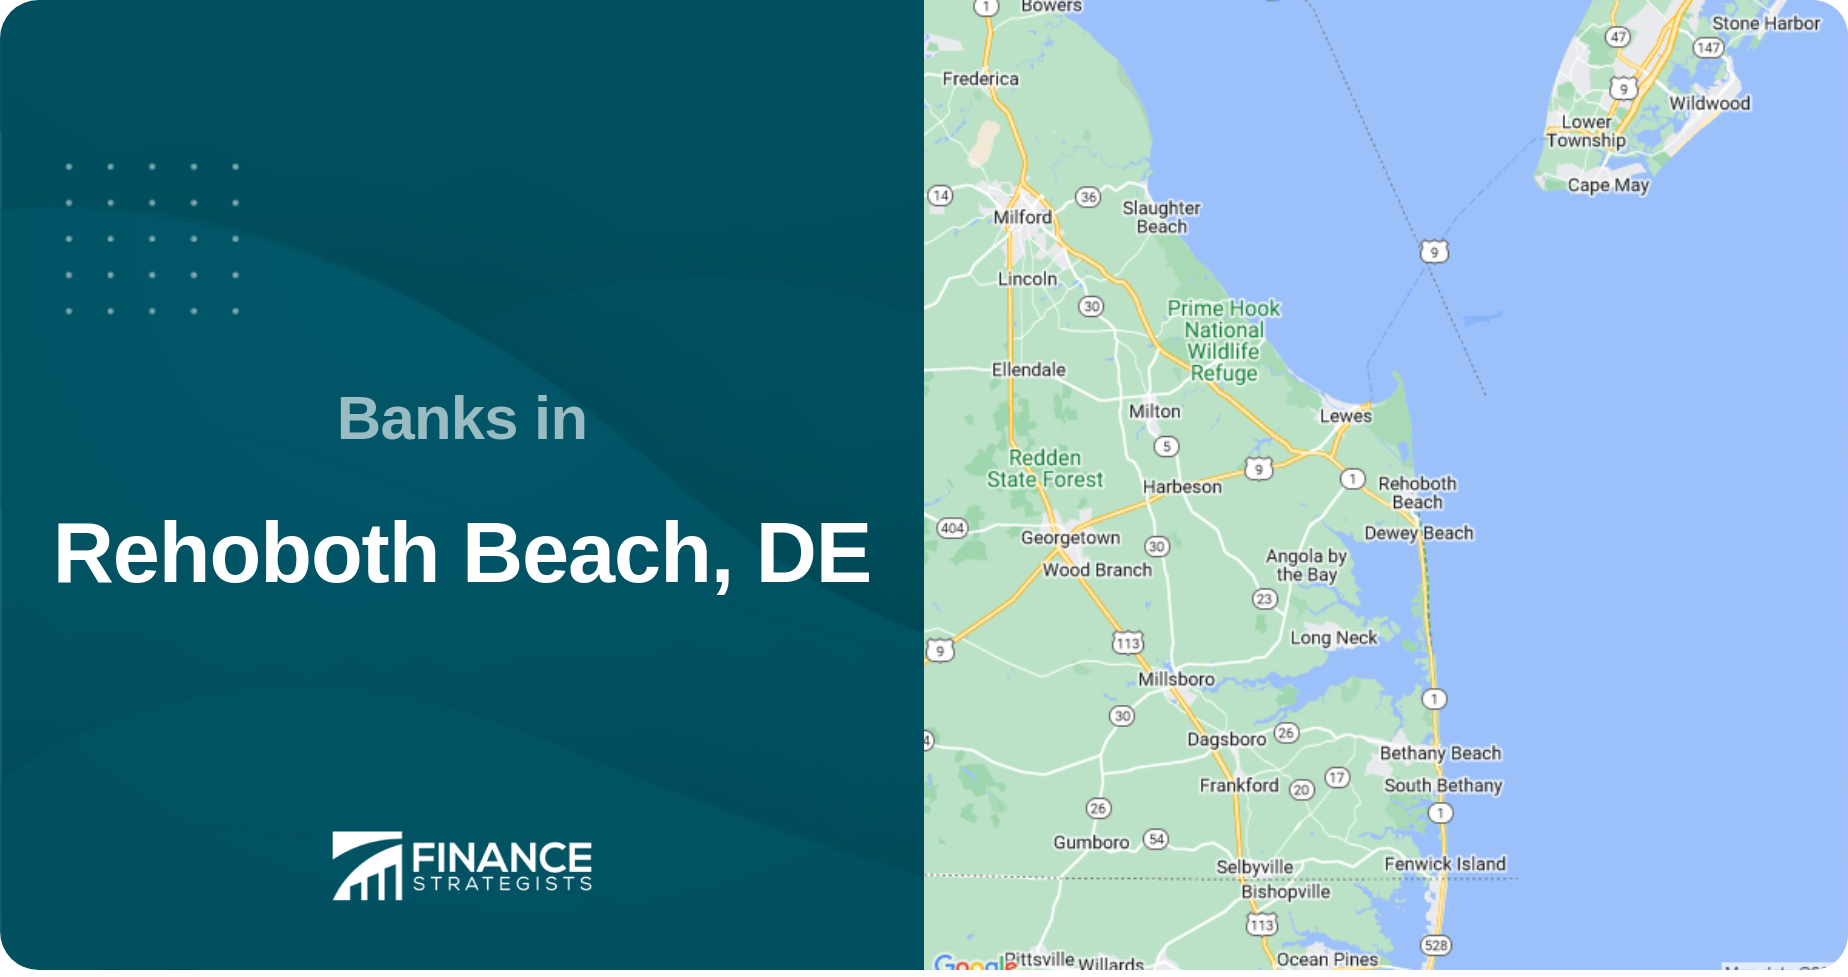 Banks in Rehoboth Beach, DE